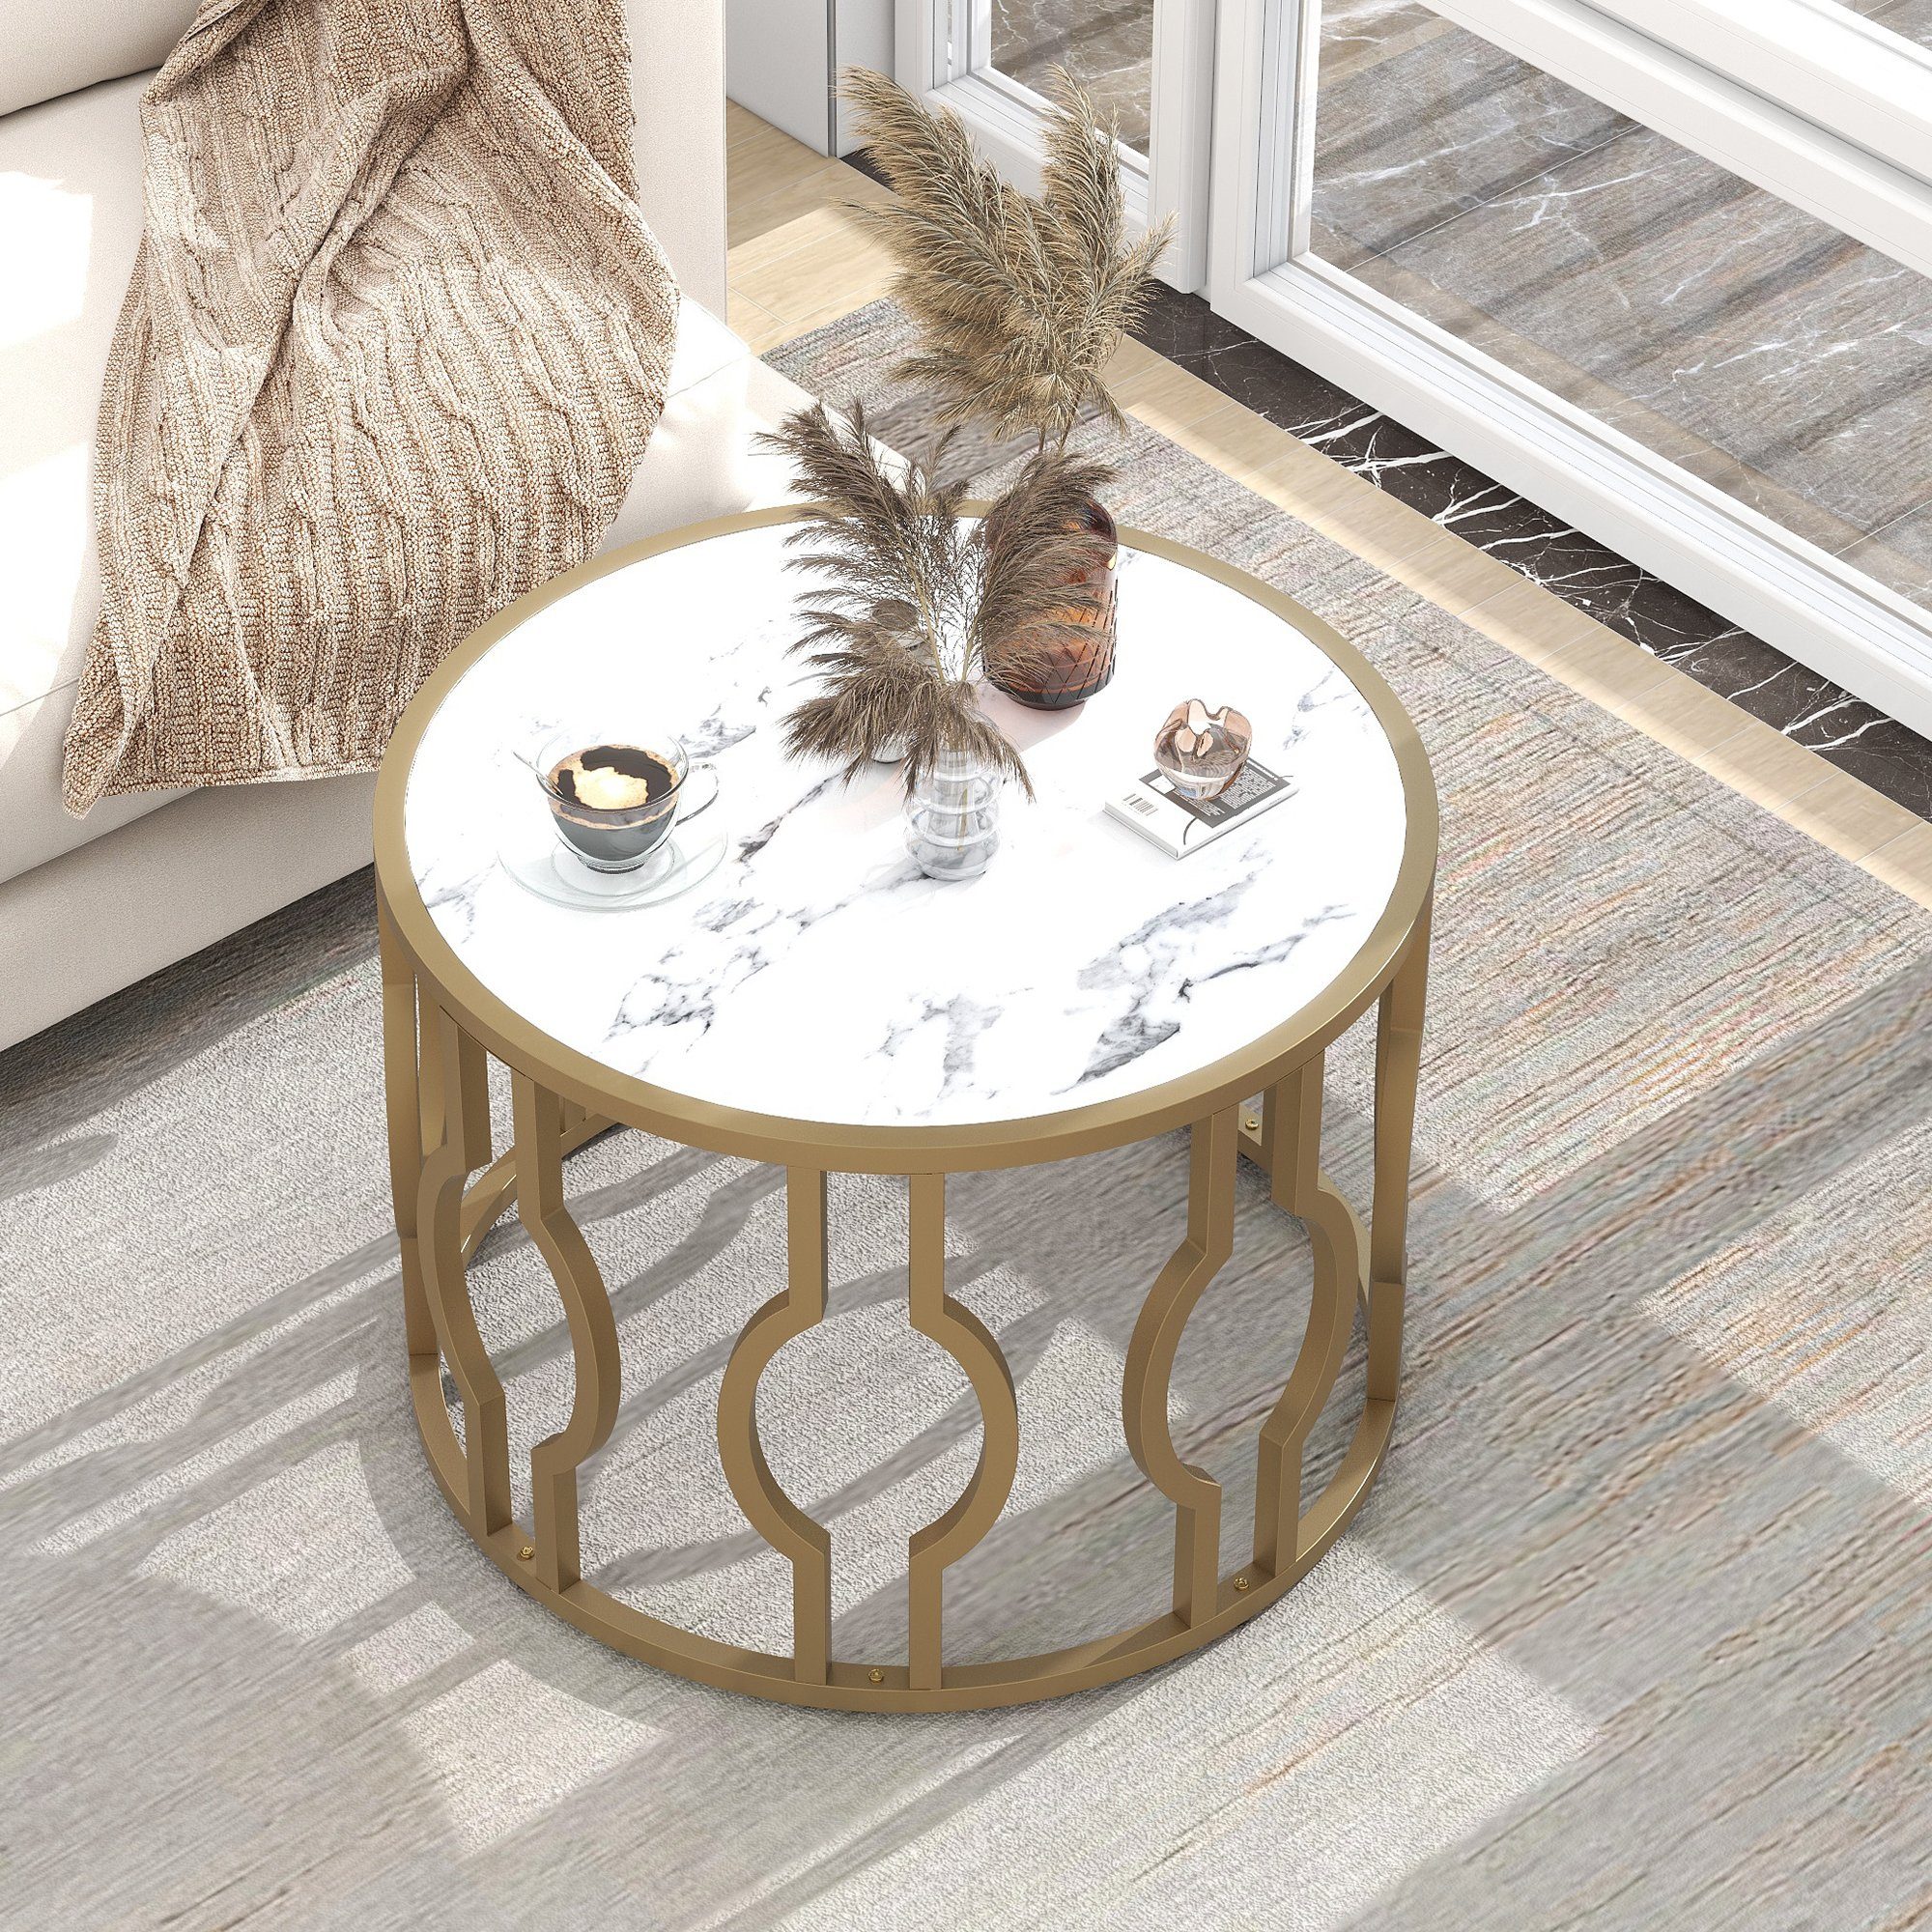 70*46.5cm), Sofatisch Metallrahmen Rund mit weißes Wohnzimmer golden Tisch Couchtisch OKWISH Beistelltisch Marmoroptik (Mamormuster Beistelltisch